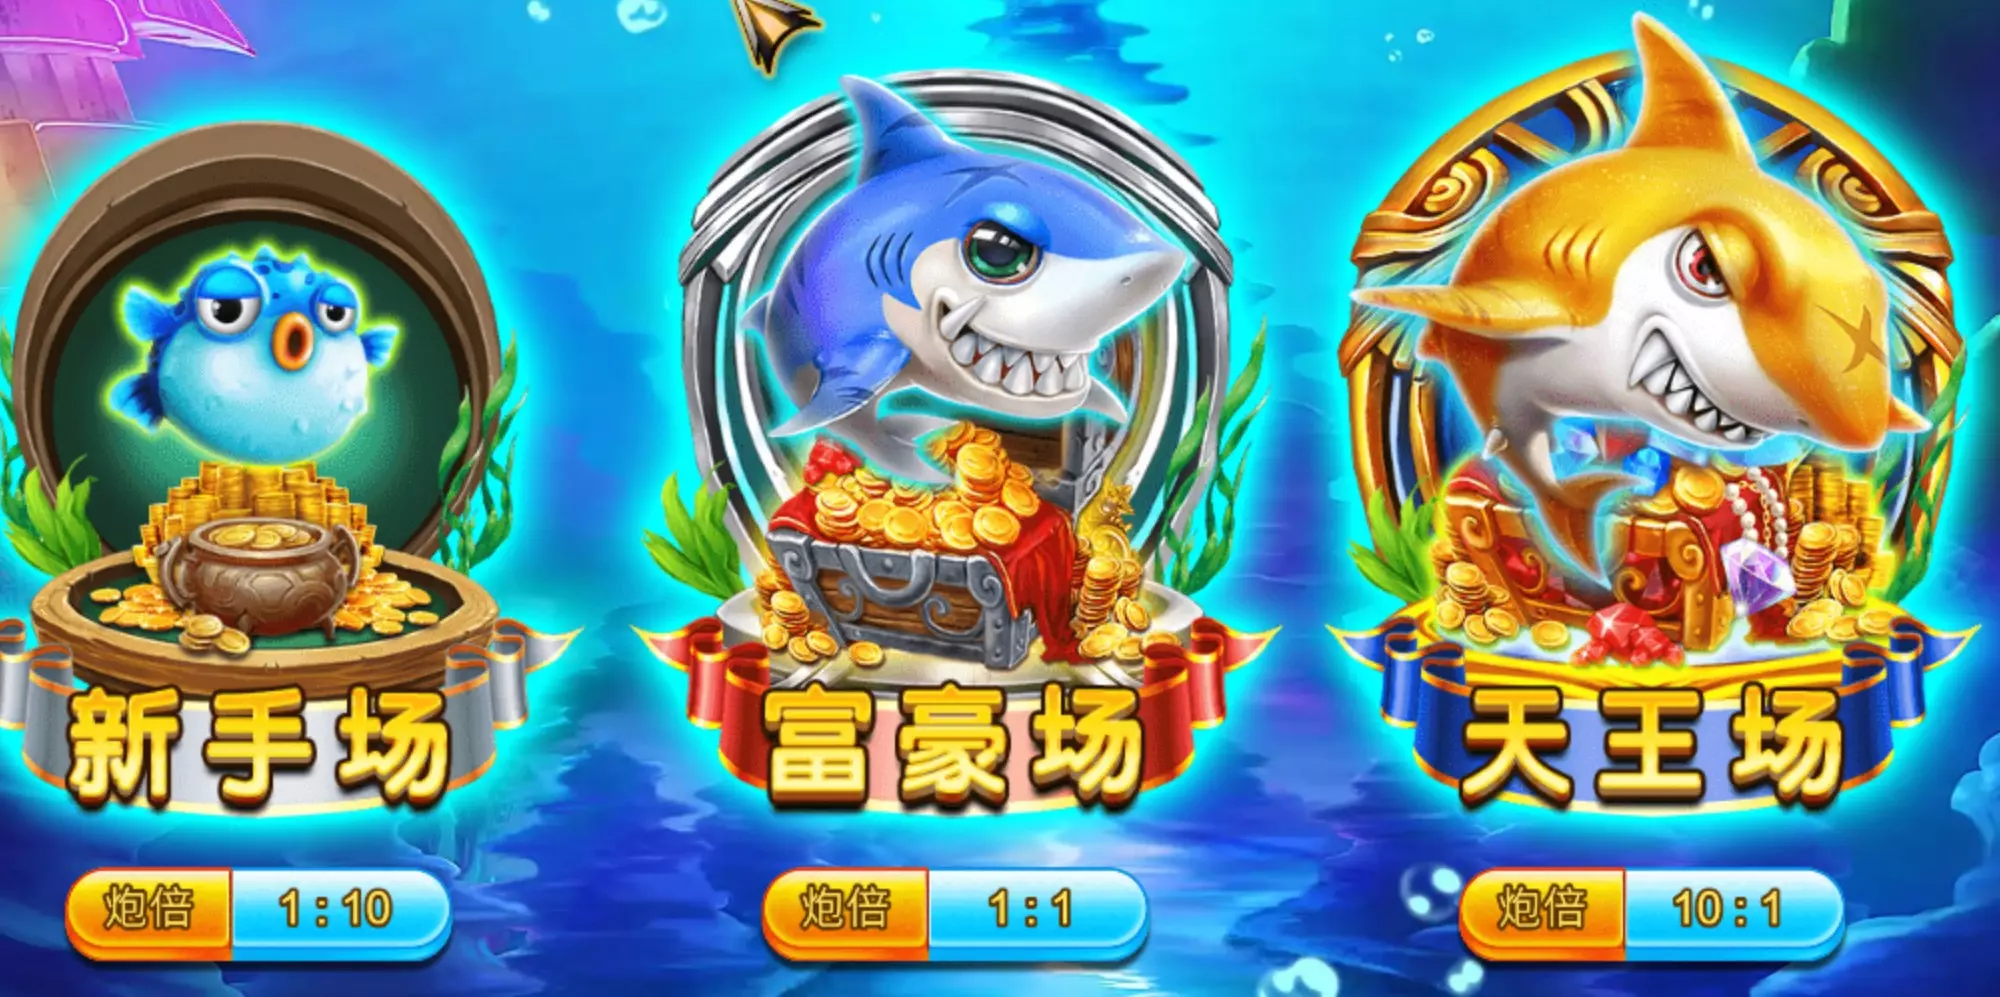 【ZG捕魚】最好玩的捕魚機遊戲玩法攻略介紹